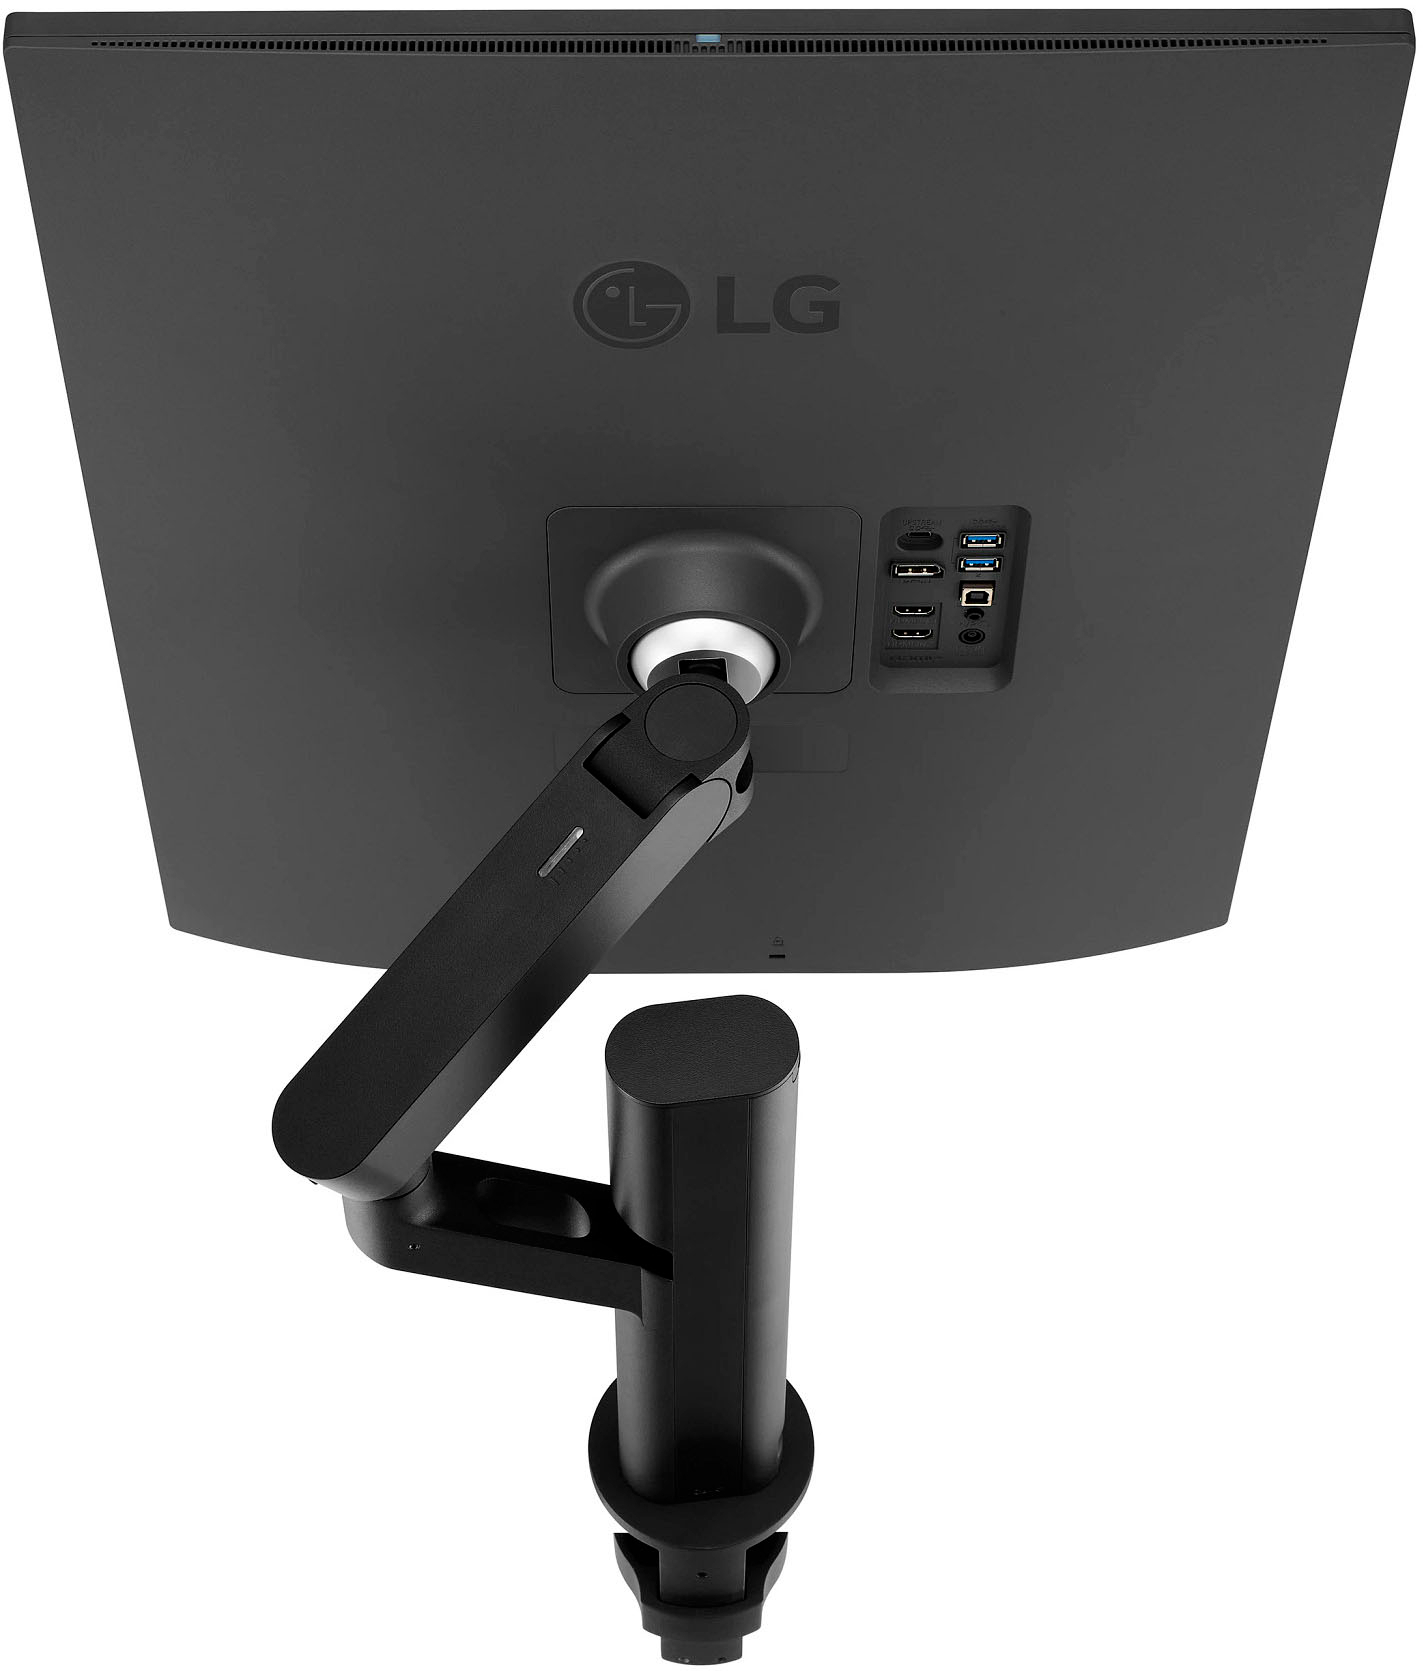 LG ERGO DualUp 28MQ780-B Ecran PC vertical 28 - dalle Nano IPS résolution  Square Double QHD (2560x2880), format 16:18, HDR 10, DCI-P3 98%, USB-C  (90W), KVM intégré, pied ergonomique réglable : 